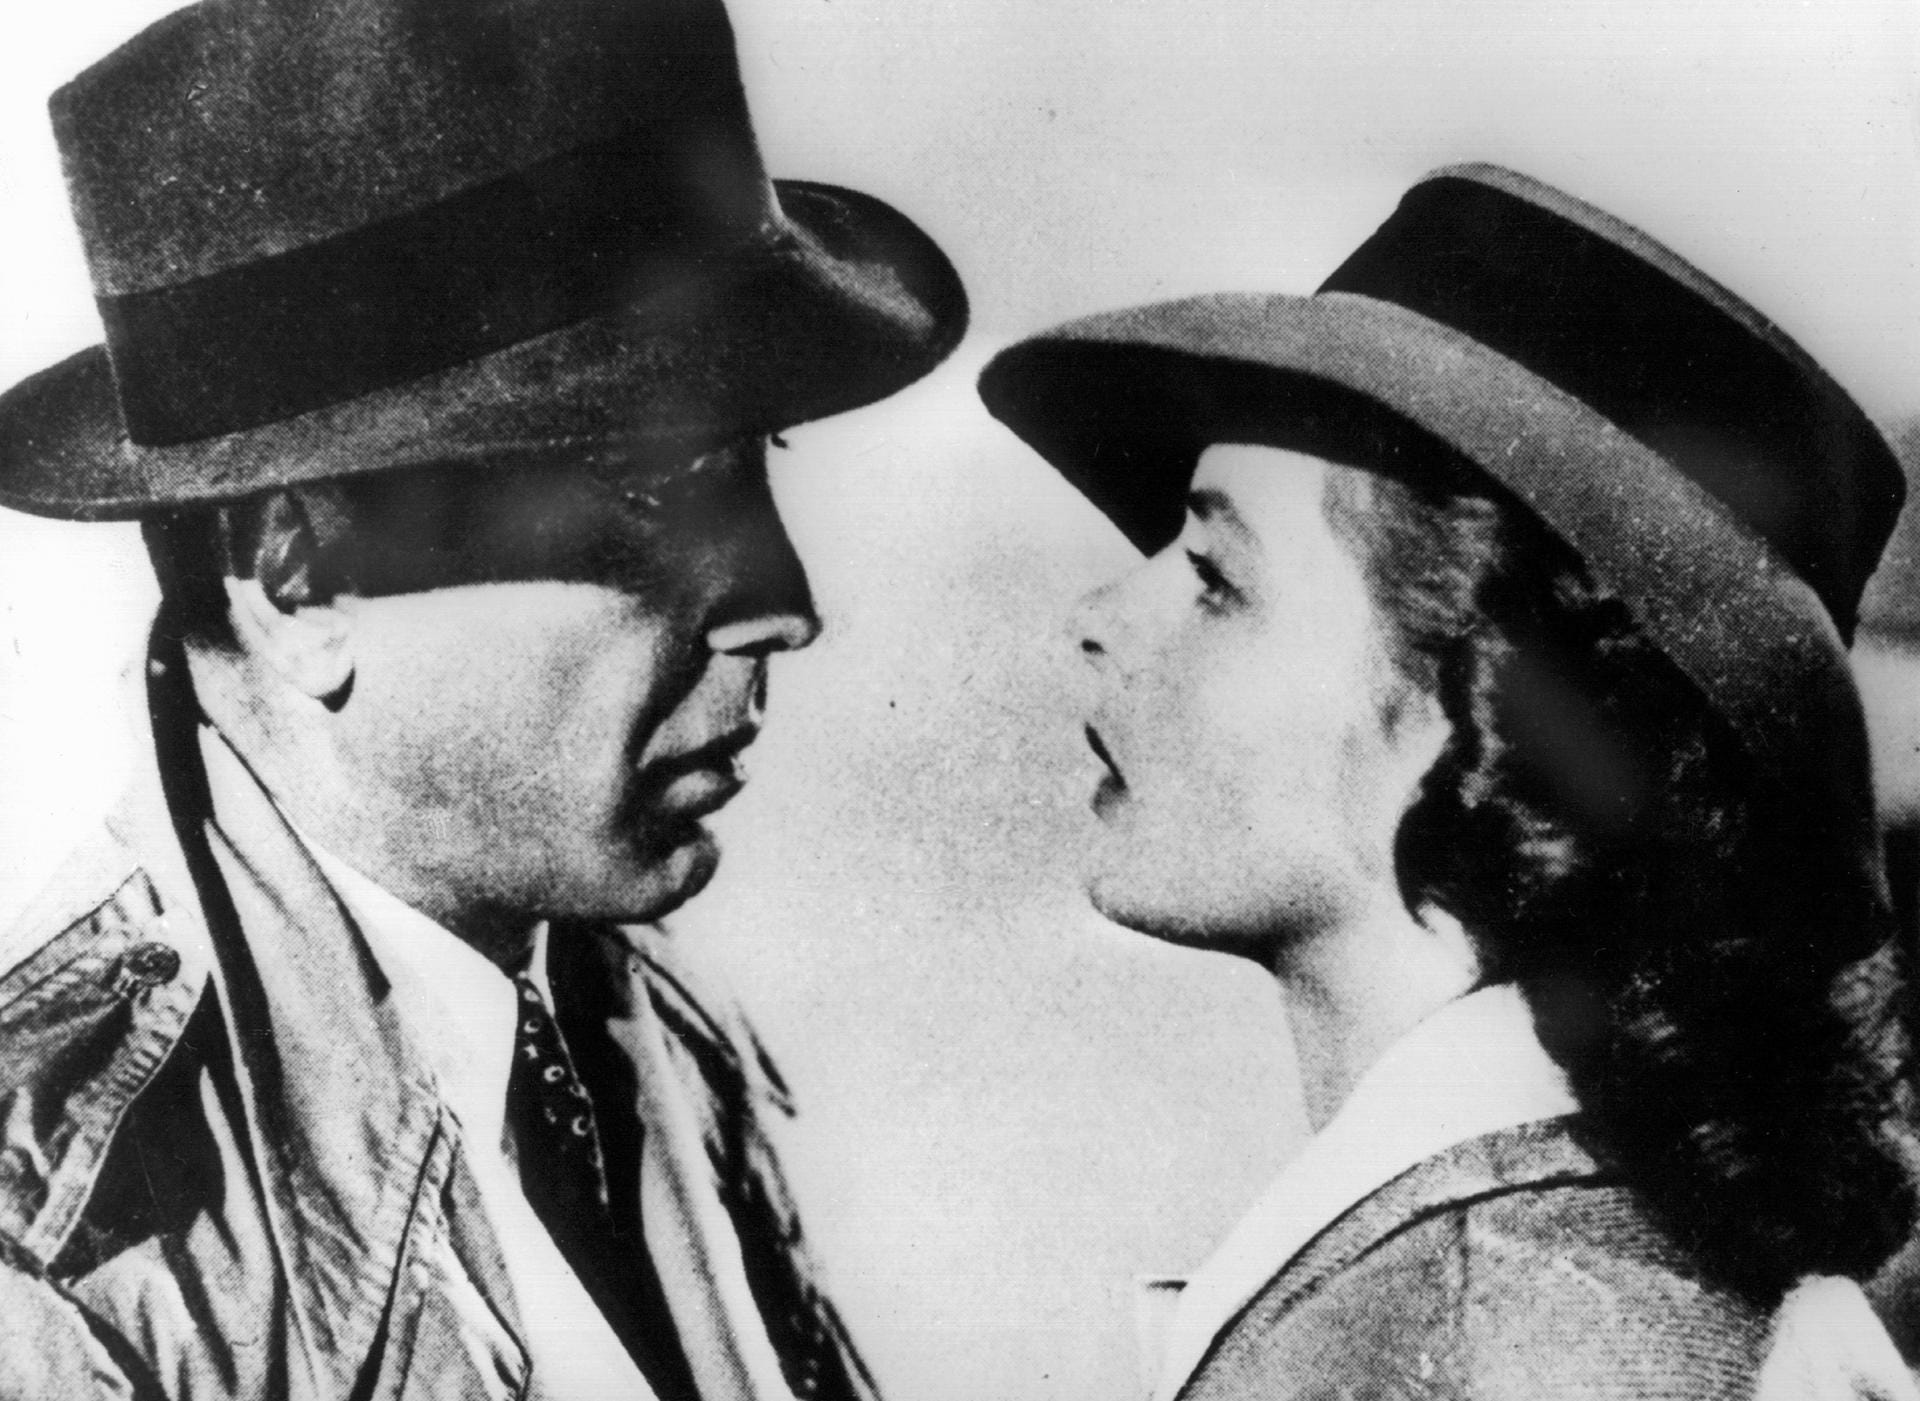 Zu absolutem Kultstatus schaffte es Rick (Humphrey Bogart) in "Casablanca", der Ilsa (Ingrid Bergman) voller Liebe ins Ohr hauchte: "Ich schau' dir in die Augen, Kleines."